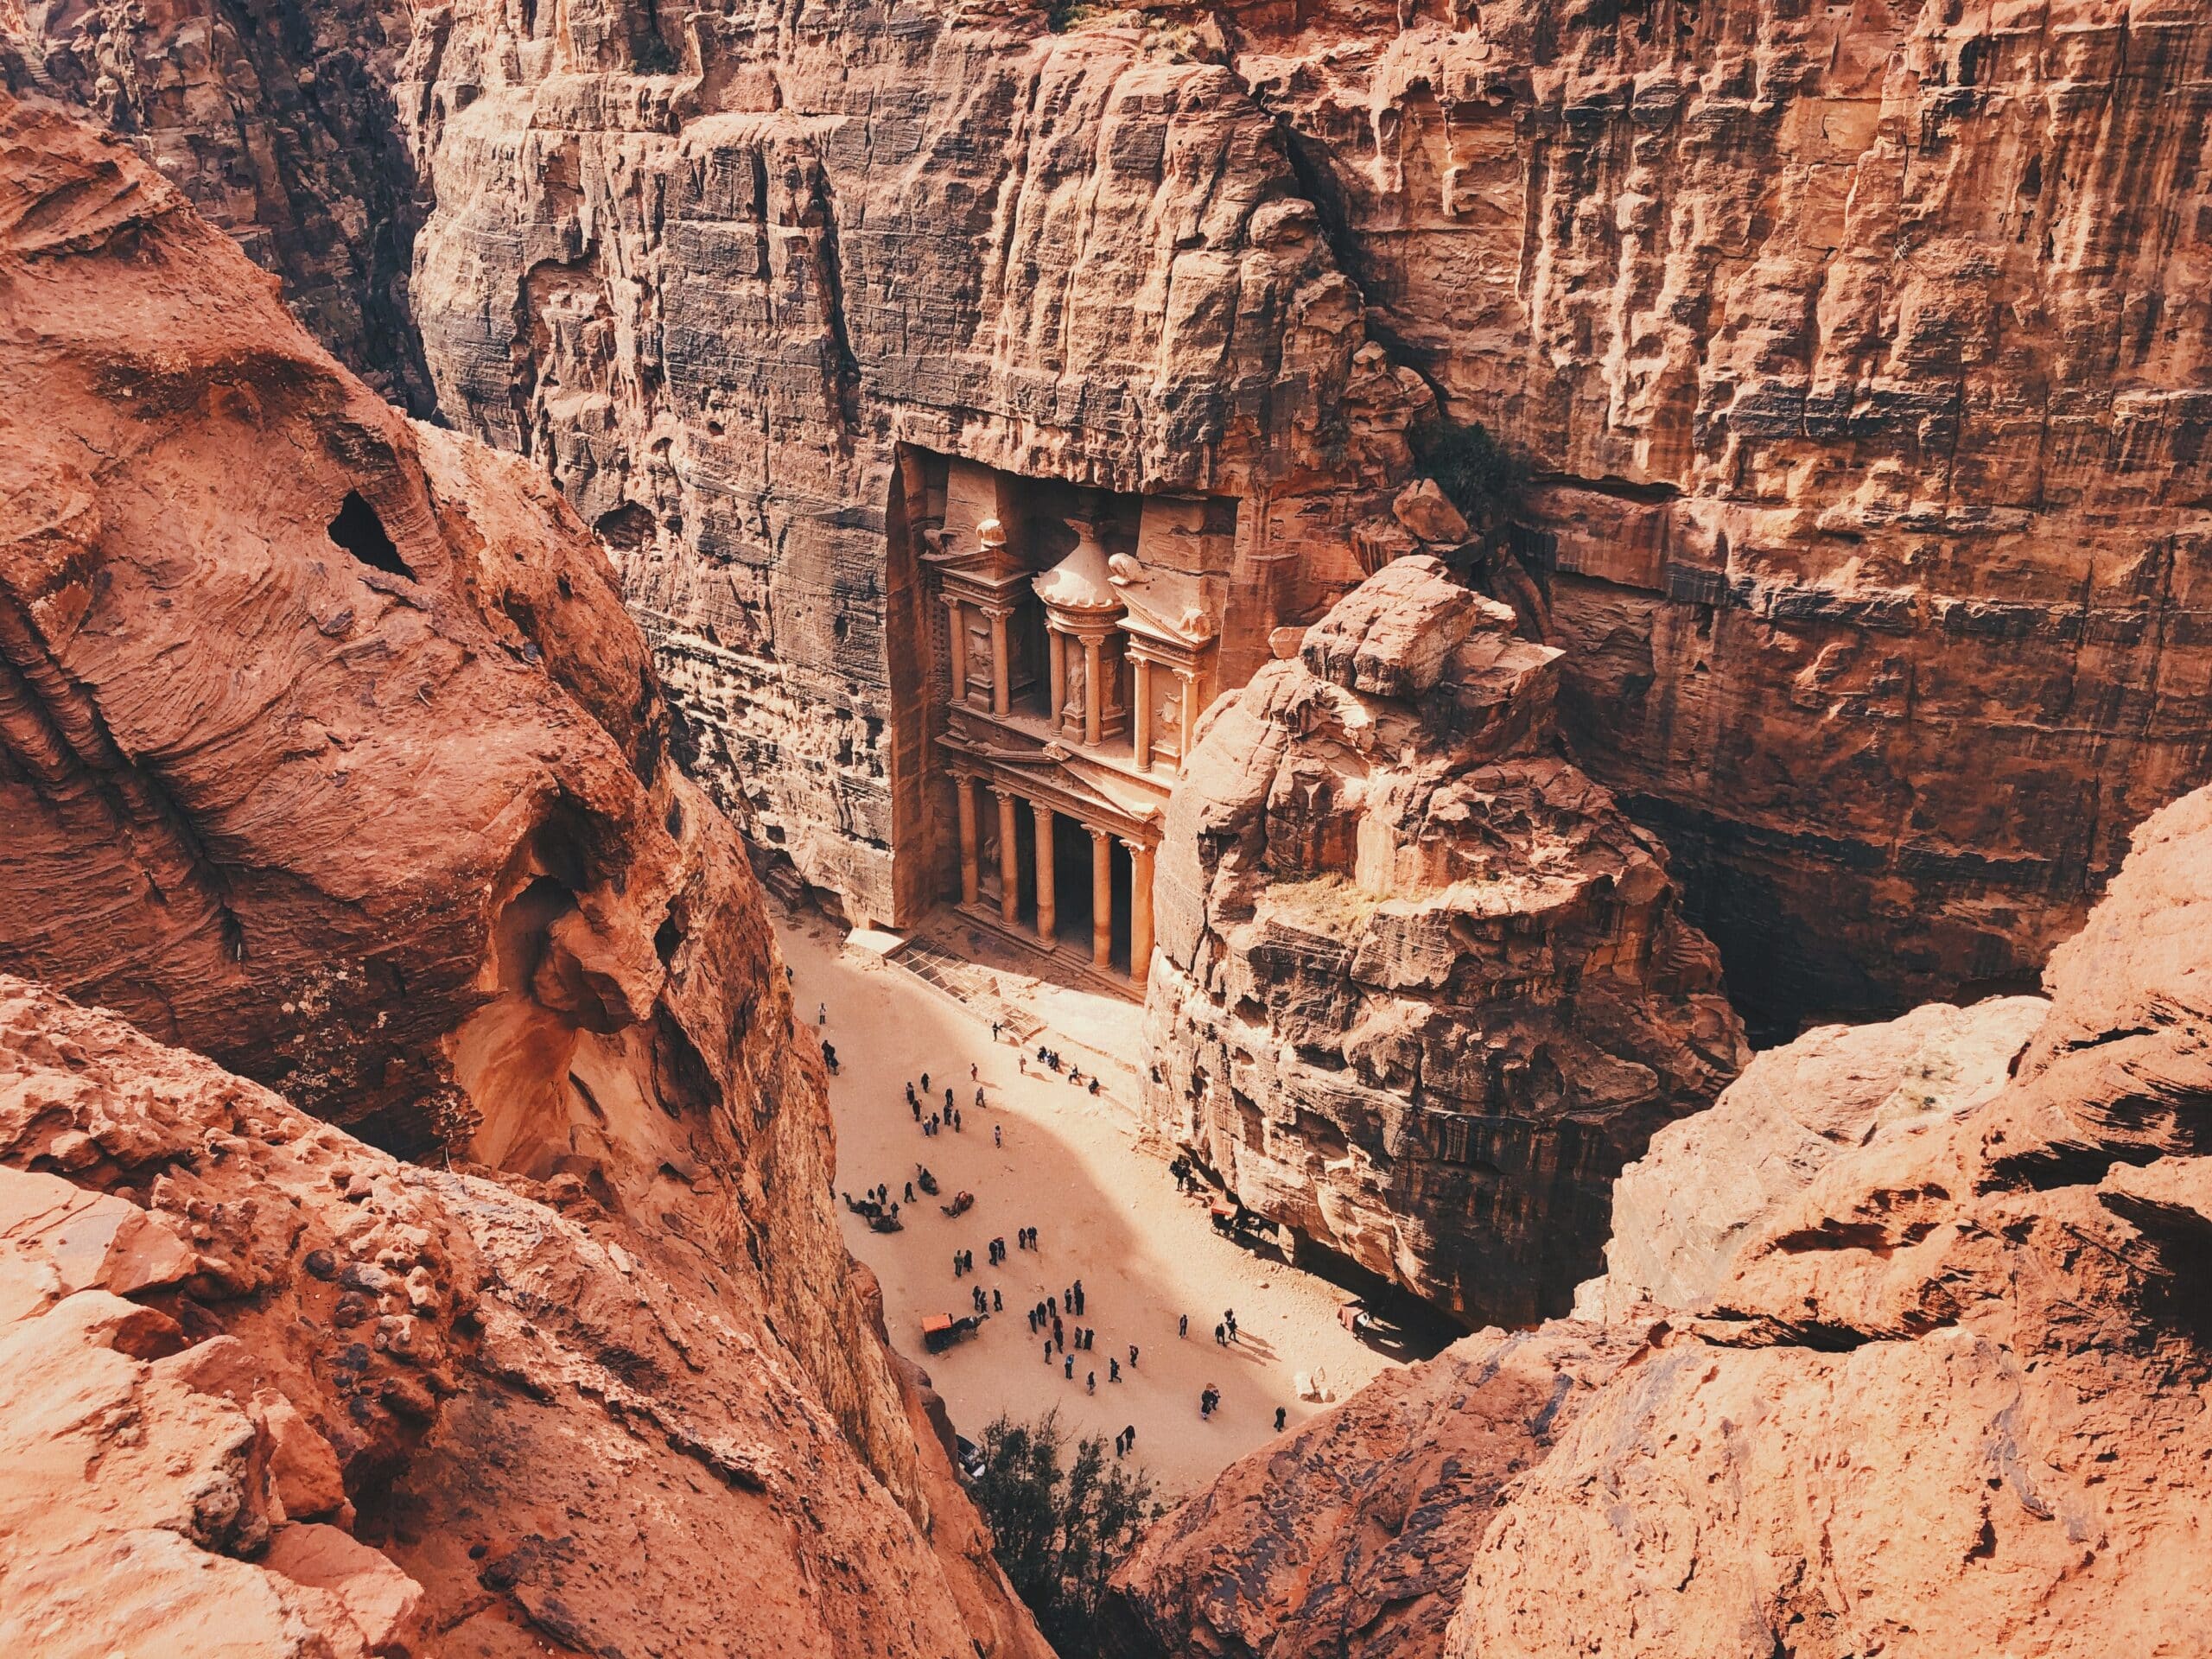 Vista de cima das ruína de Petra, na Jordânia, durante o dia em volta de montanhas rochosas em tons vermelho, com algumas pessoas abaixo. Representa chip celular Jordânia.